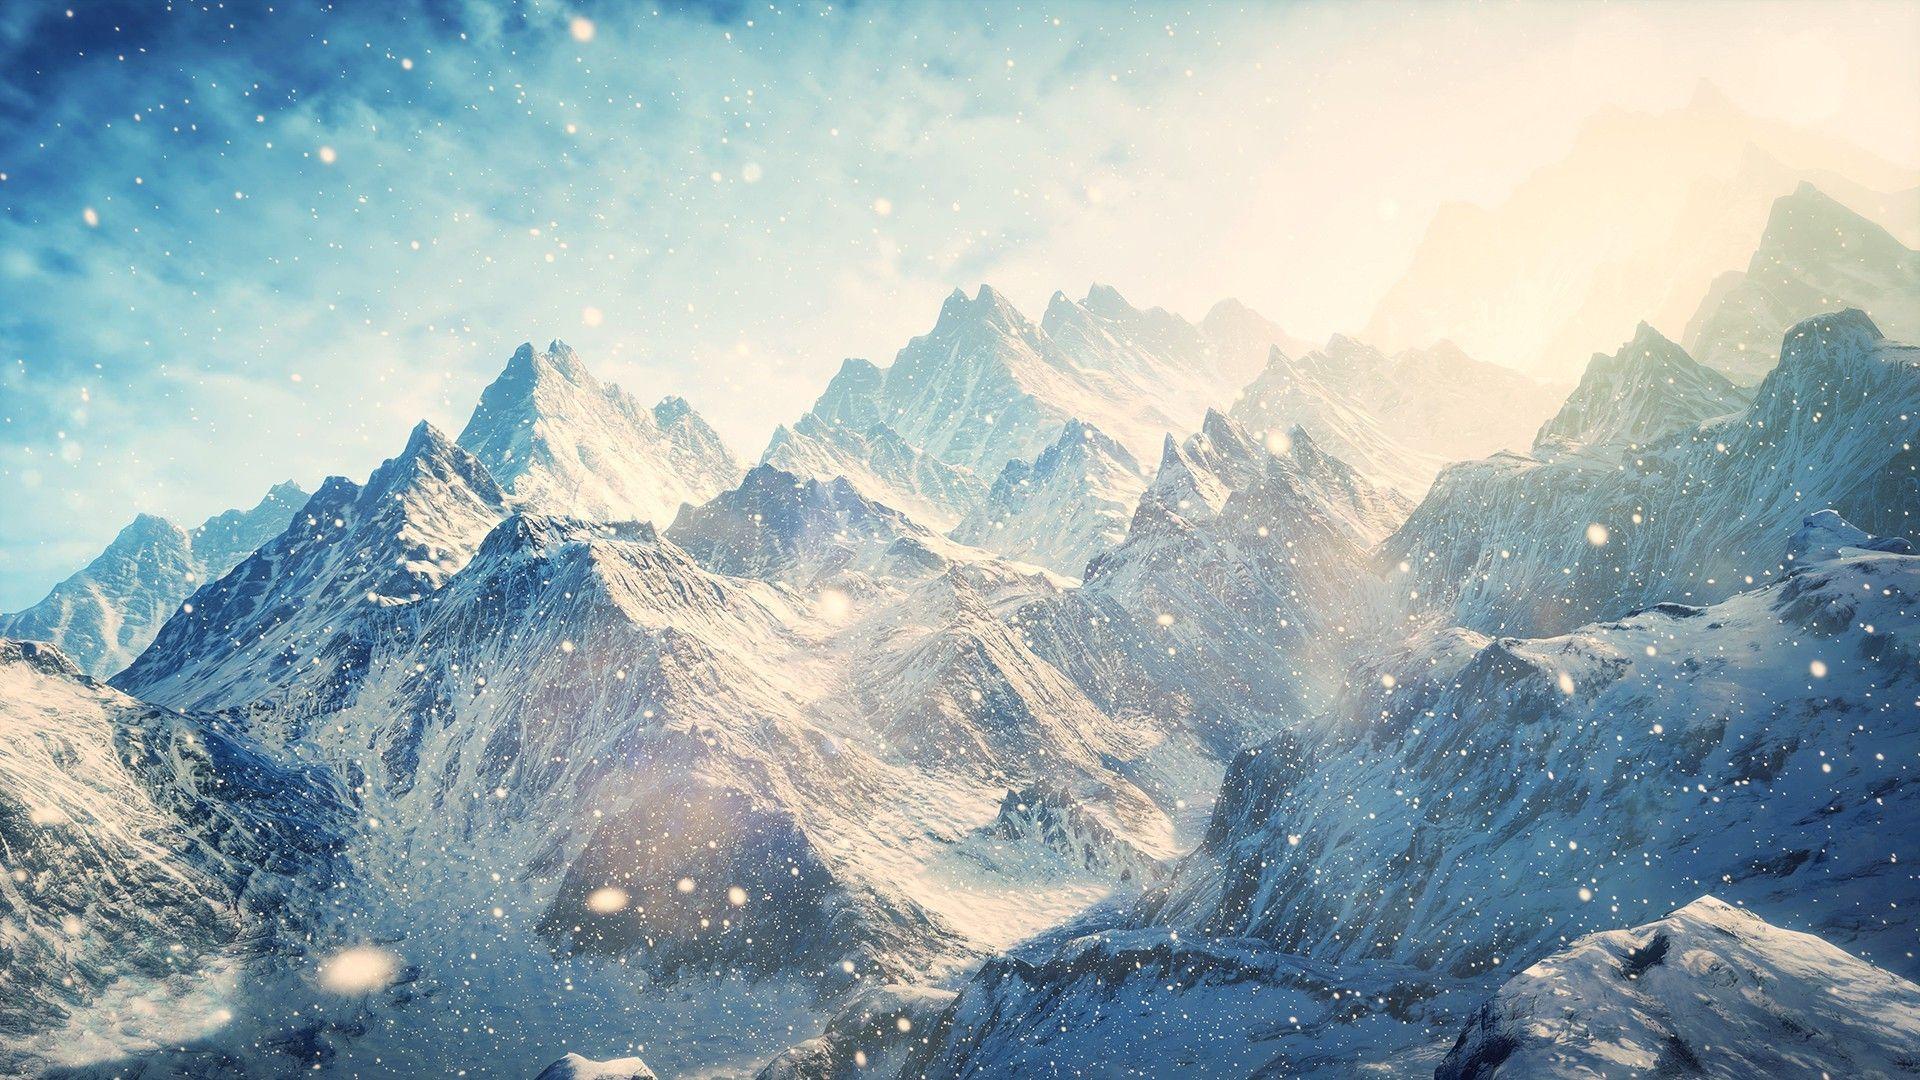 Mountain Wallpaper, 39 Full HD Widescreen Mountain Image In HD